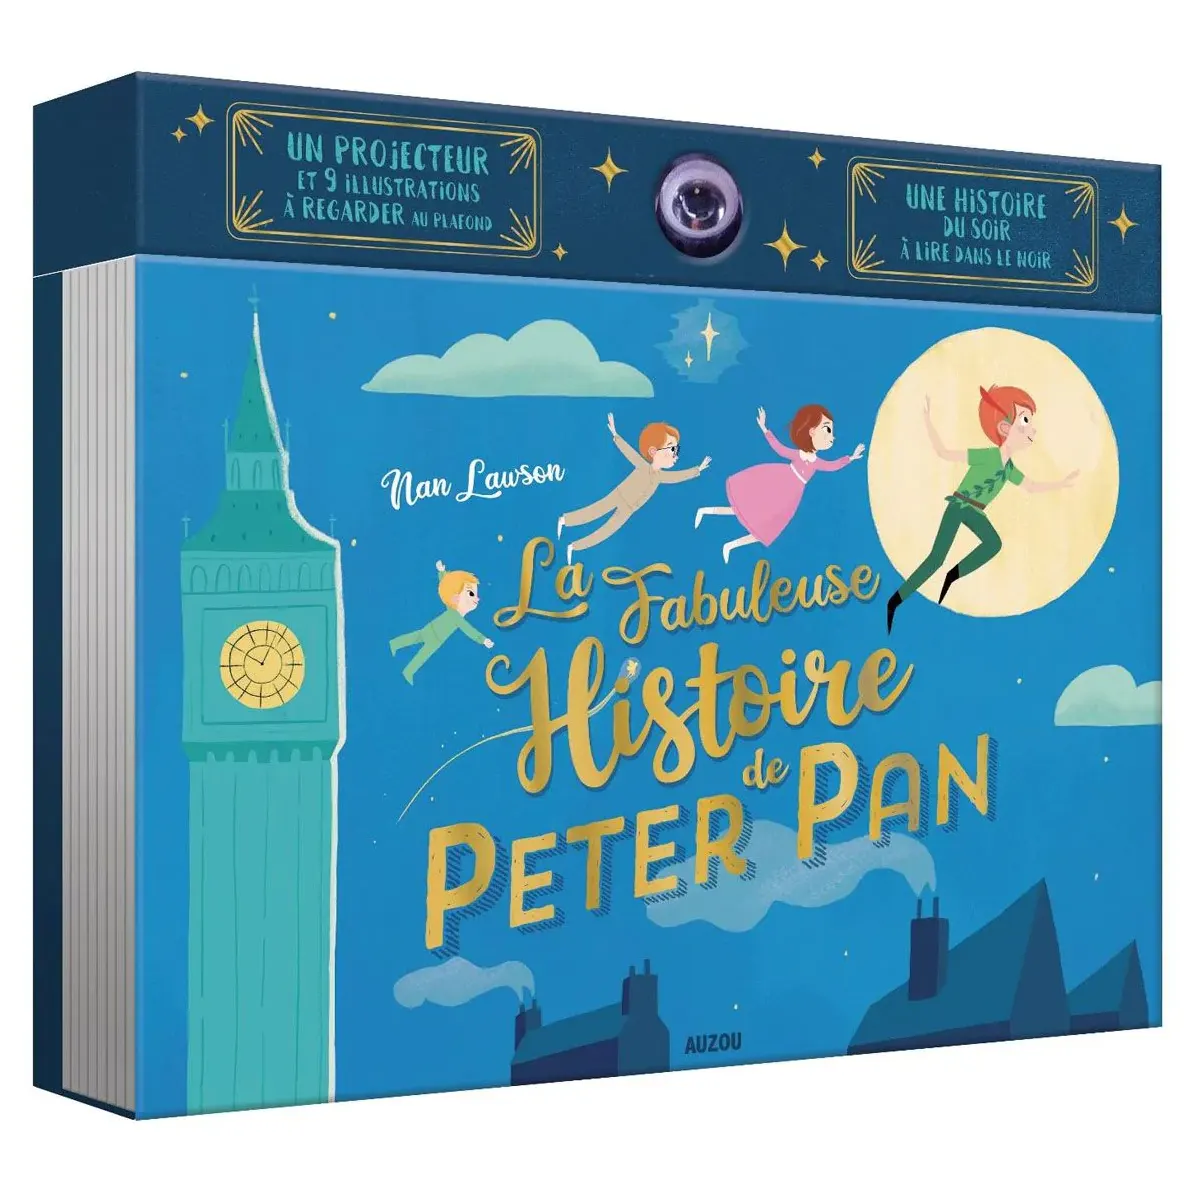 Une histoire du soir: La Fabuleuse histoire de Peter Pan